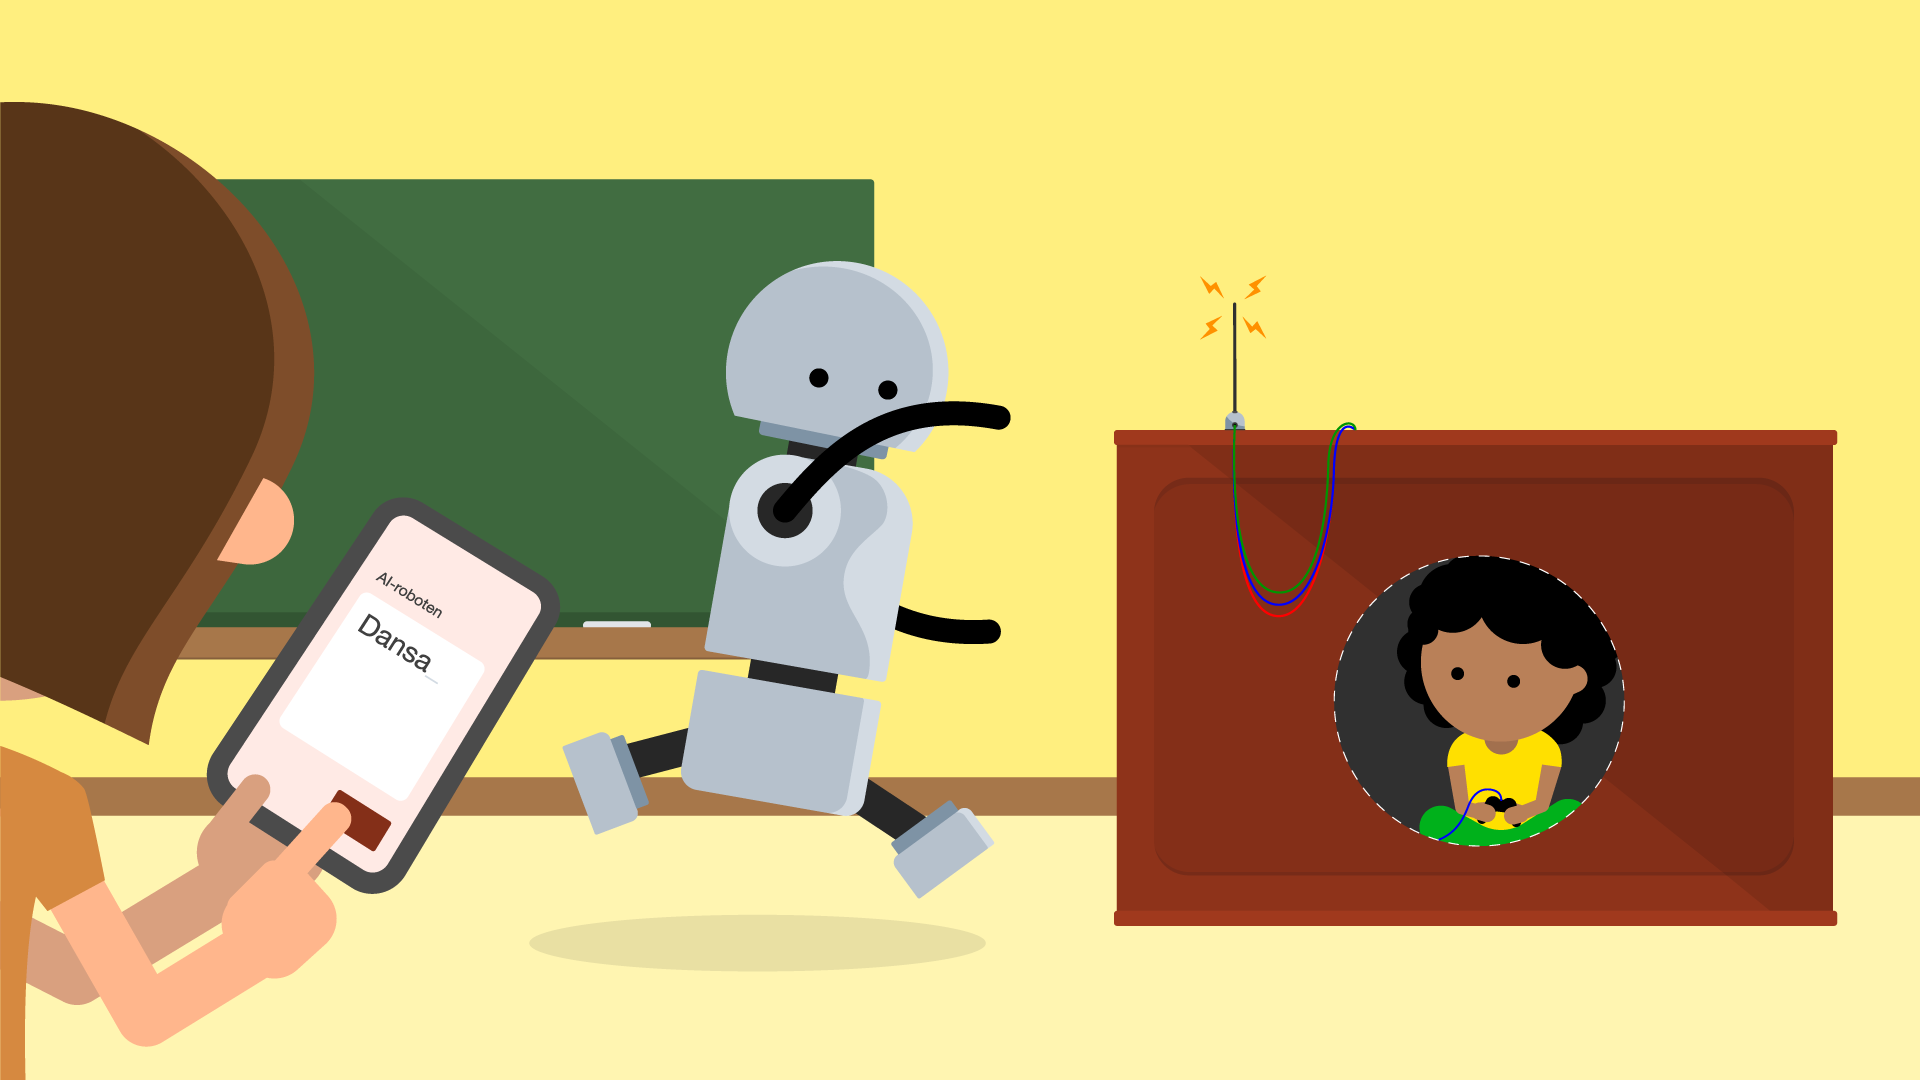 En dansande robot och två barn. Det ena barnet styr roboten med en mobil. Det andra barnet sitter gömd i katedern och styr roboten med hjälp av en styrspak (i hemlighet).